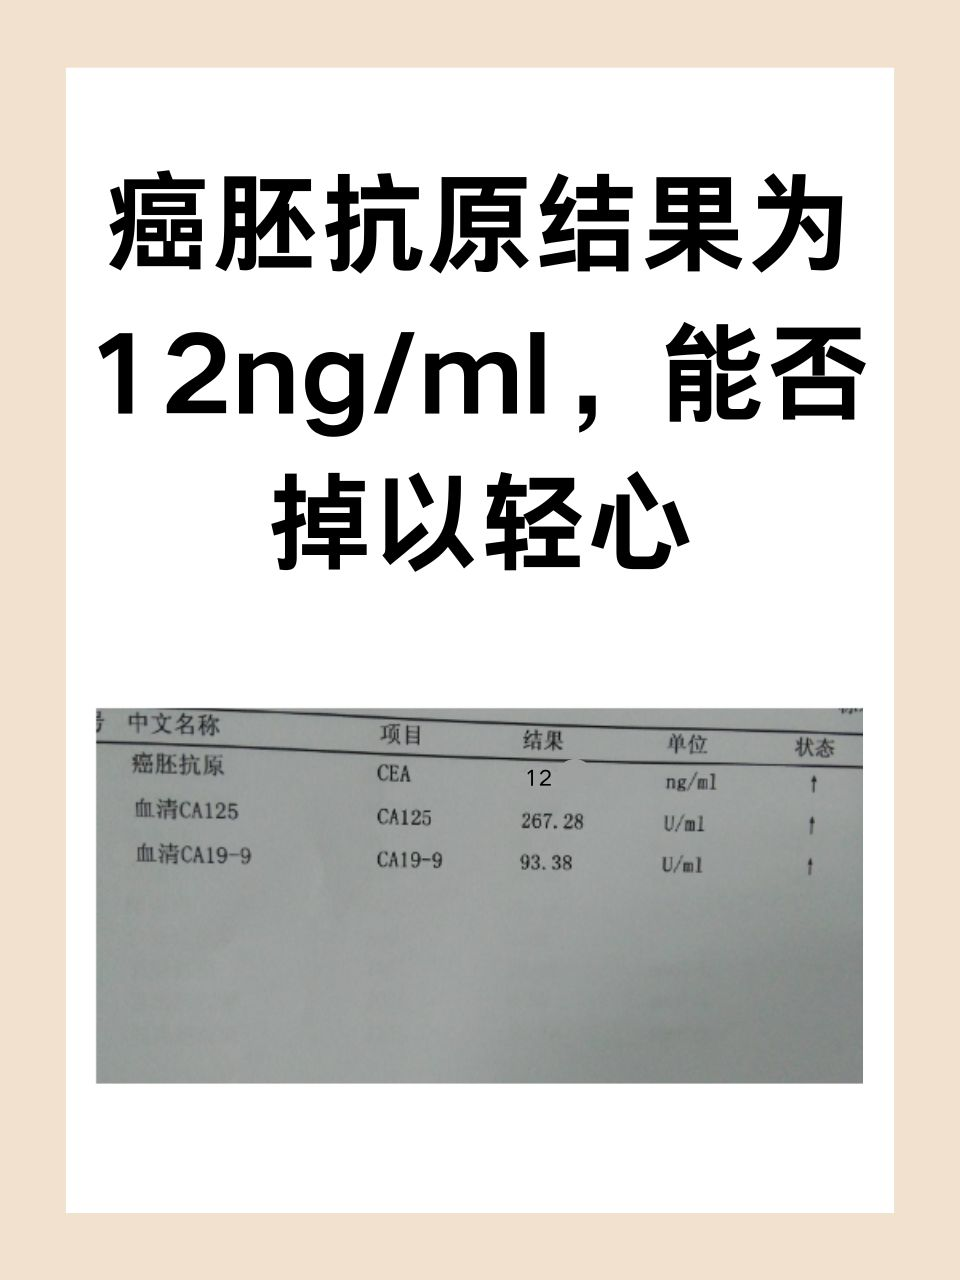 癌胚抗原结果为12ng/ml，能否掉以轻心